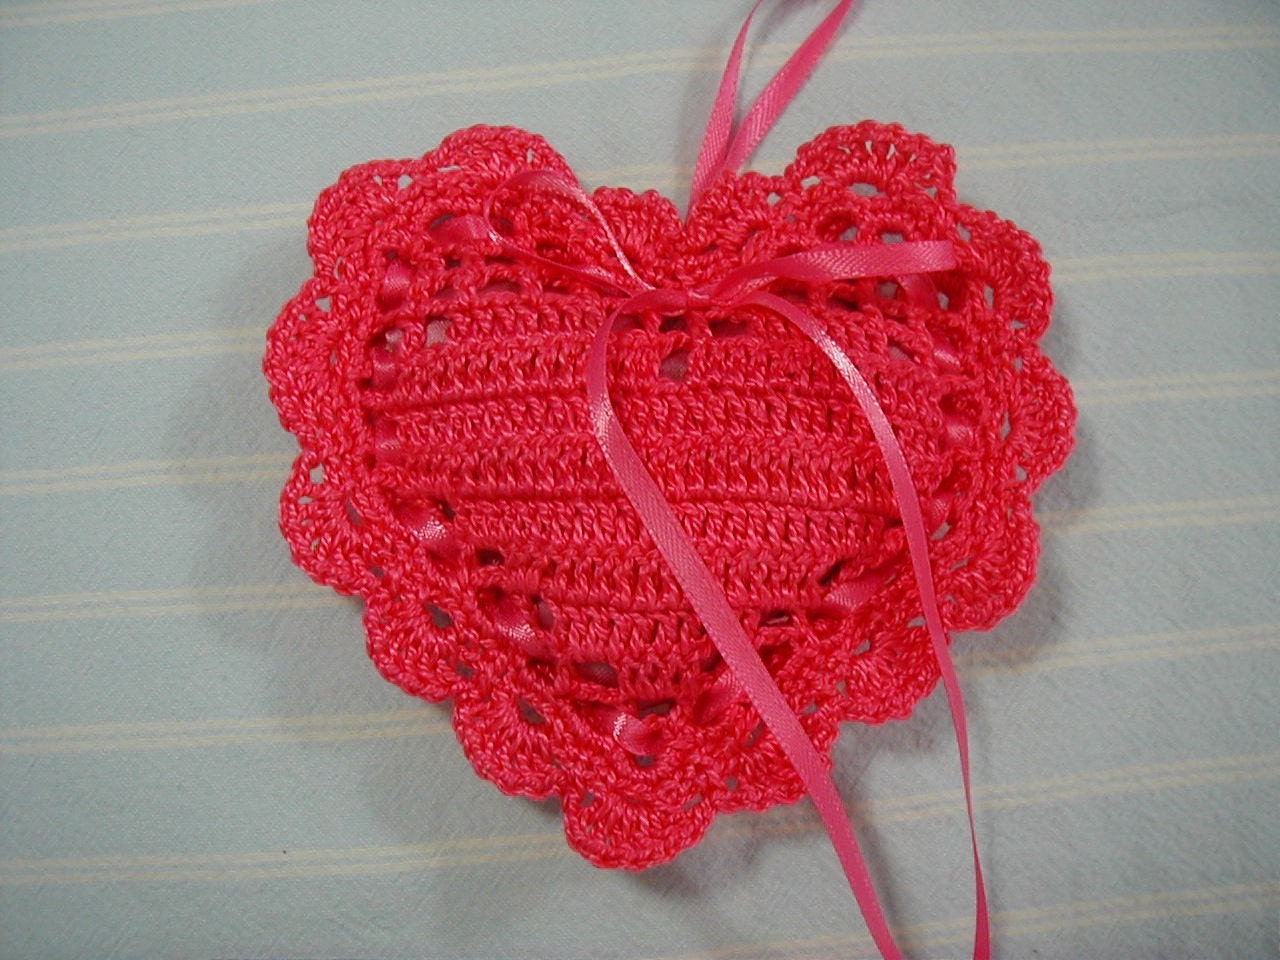 CROCHET HEART SACHETS – Only New Crochet Patterns